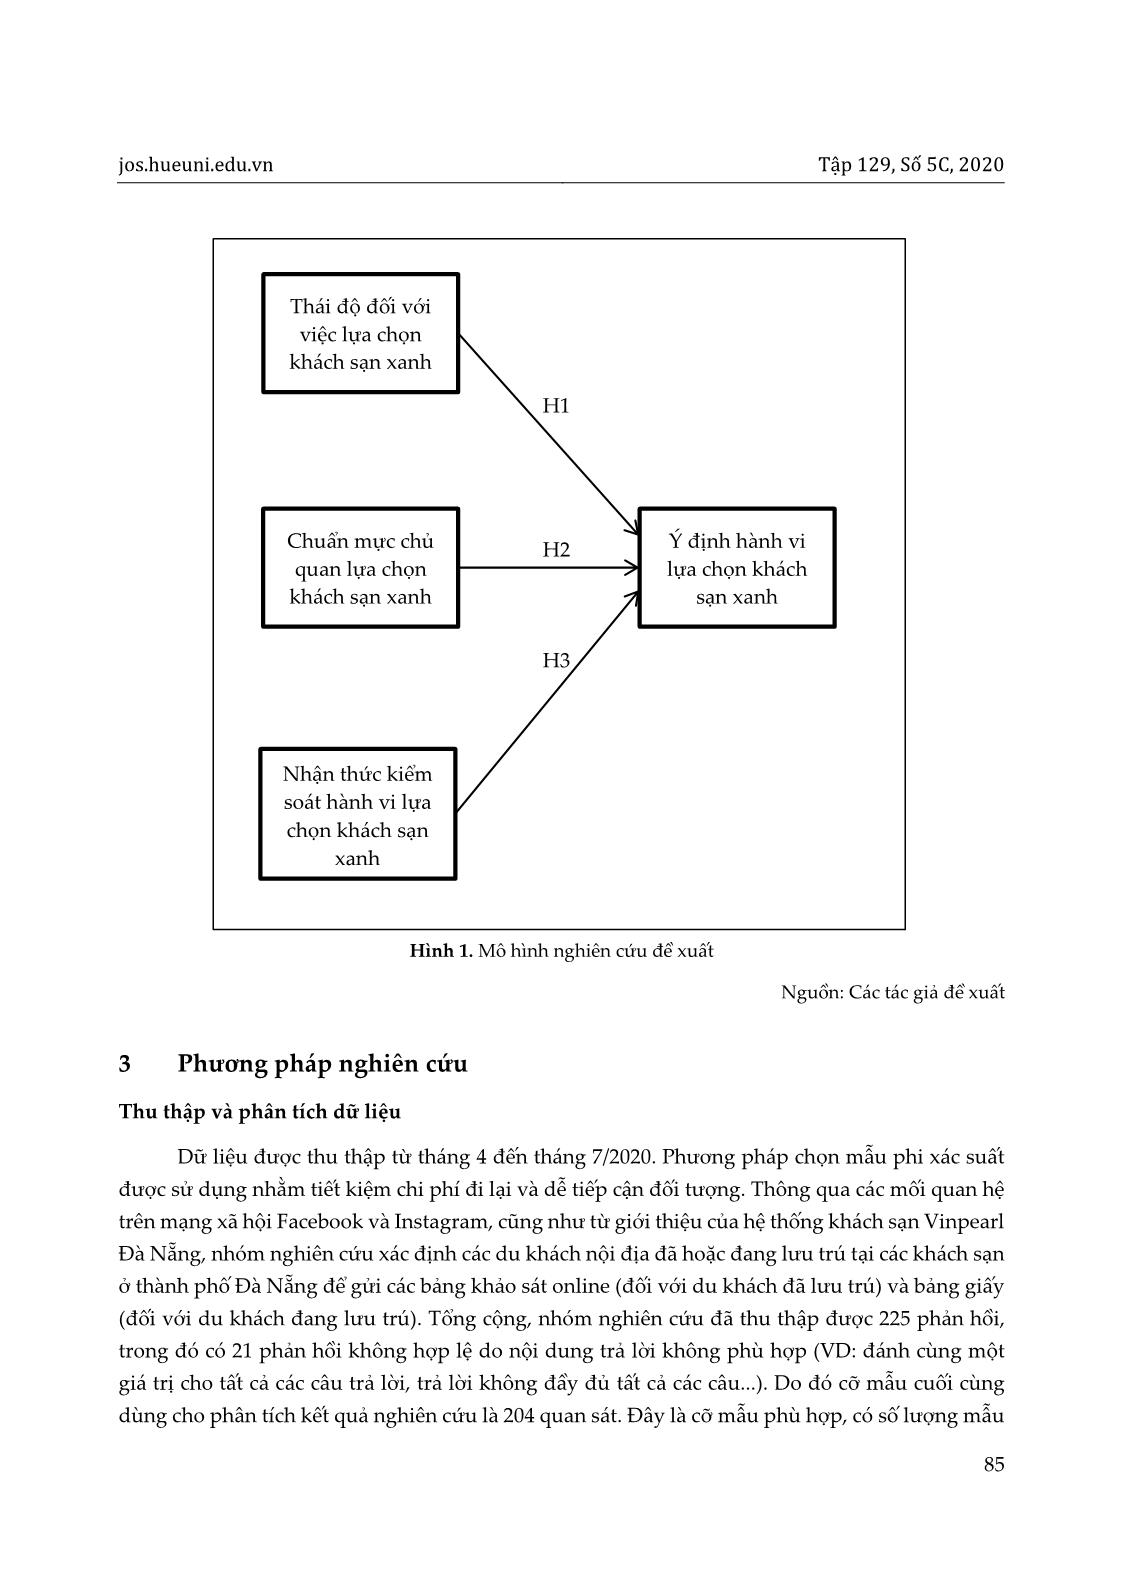 Ứng dụng lý thuyết hành vi dự định (TPB) trong nghiên cứu ý định lựa chọn khách sạn xanh của du khách tại thành phố Đà Nẵng trang 5